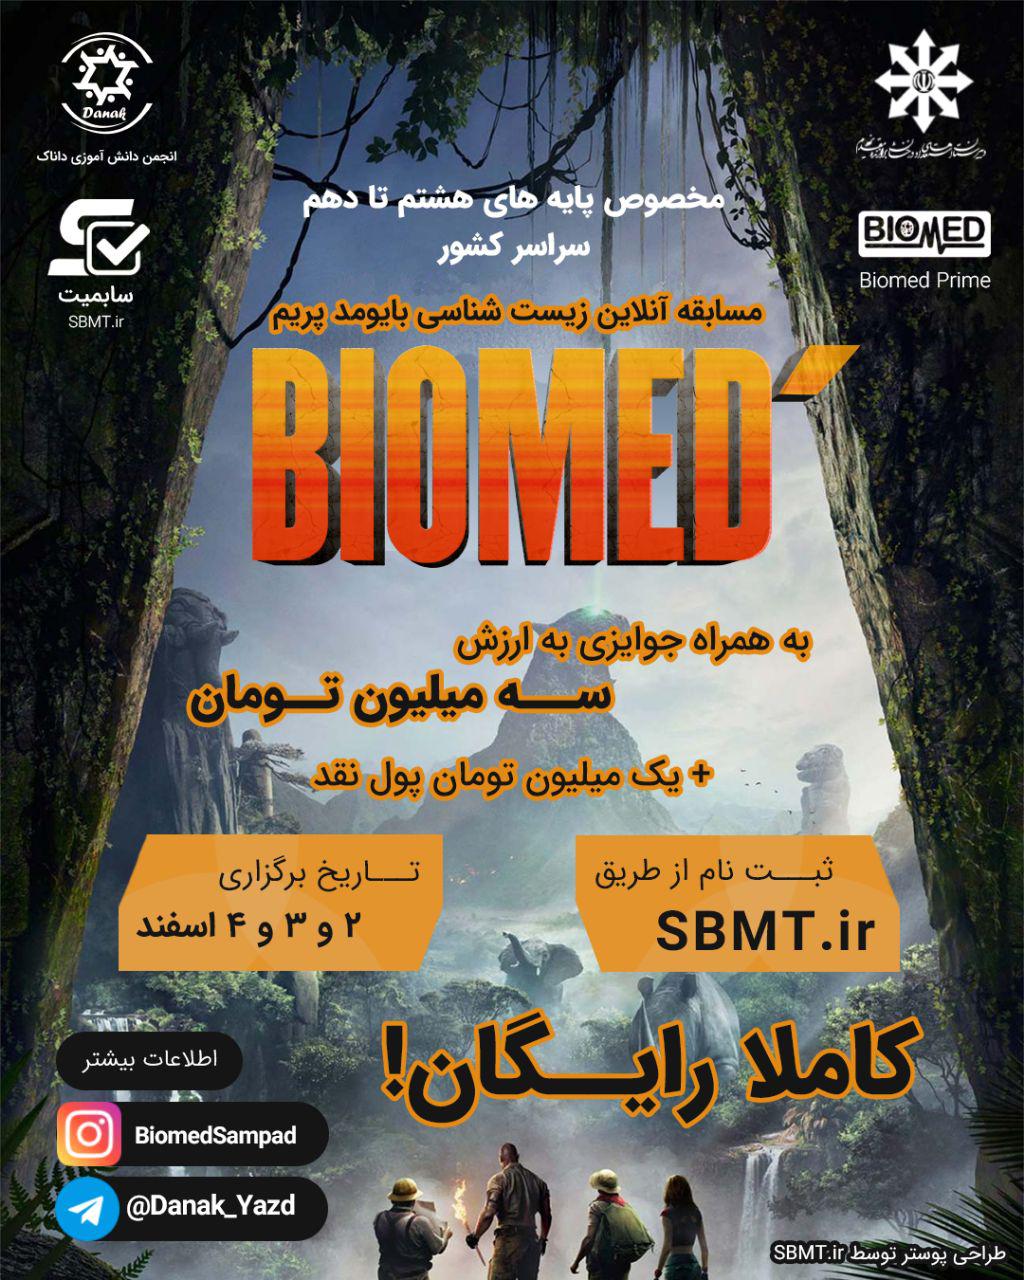 مسابقه بایومد پریم / BiomedPrime Contest